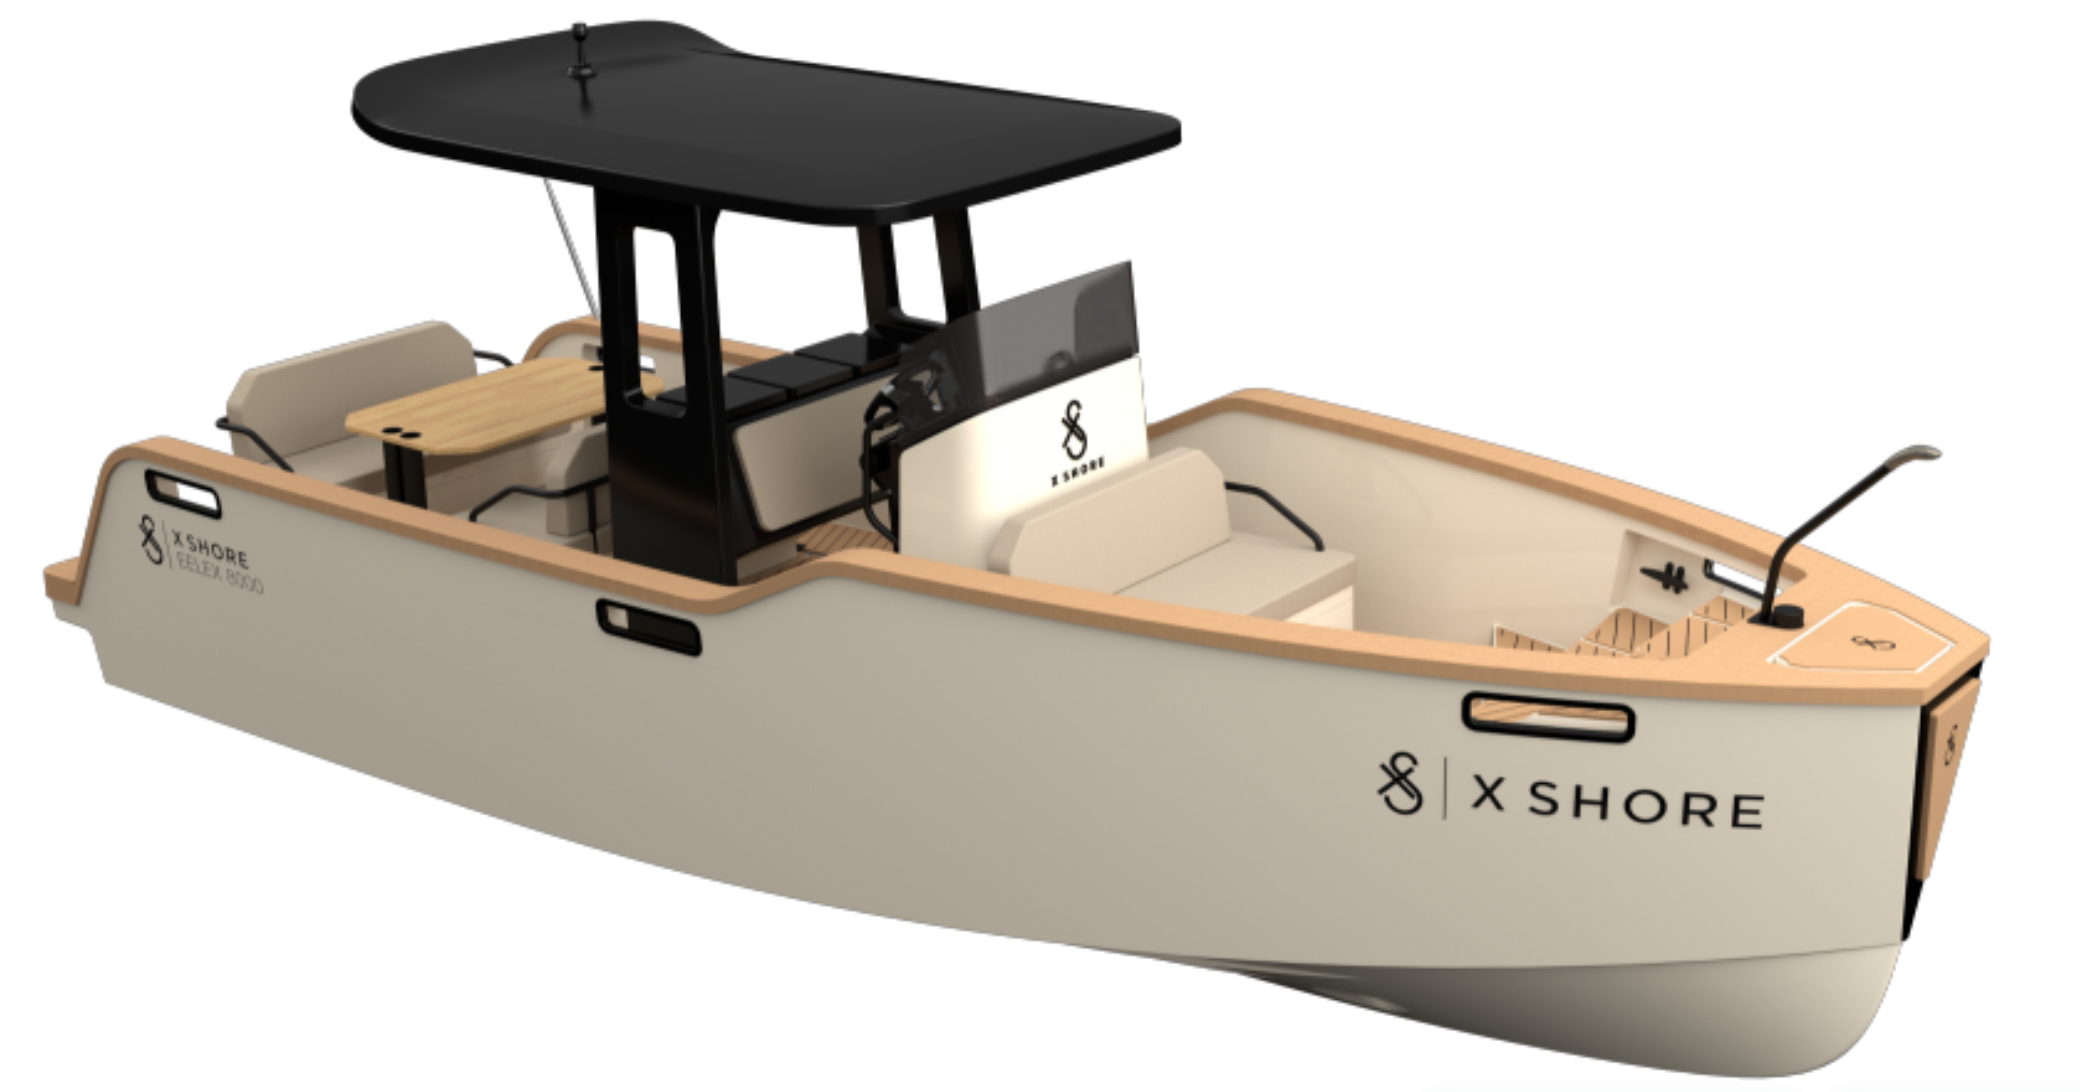 X Shore Eelex 800, X Shore electric boat